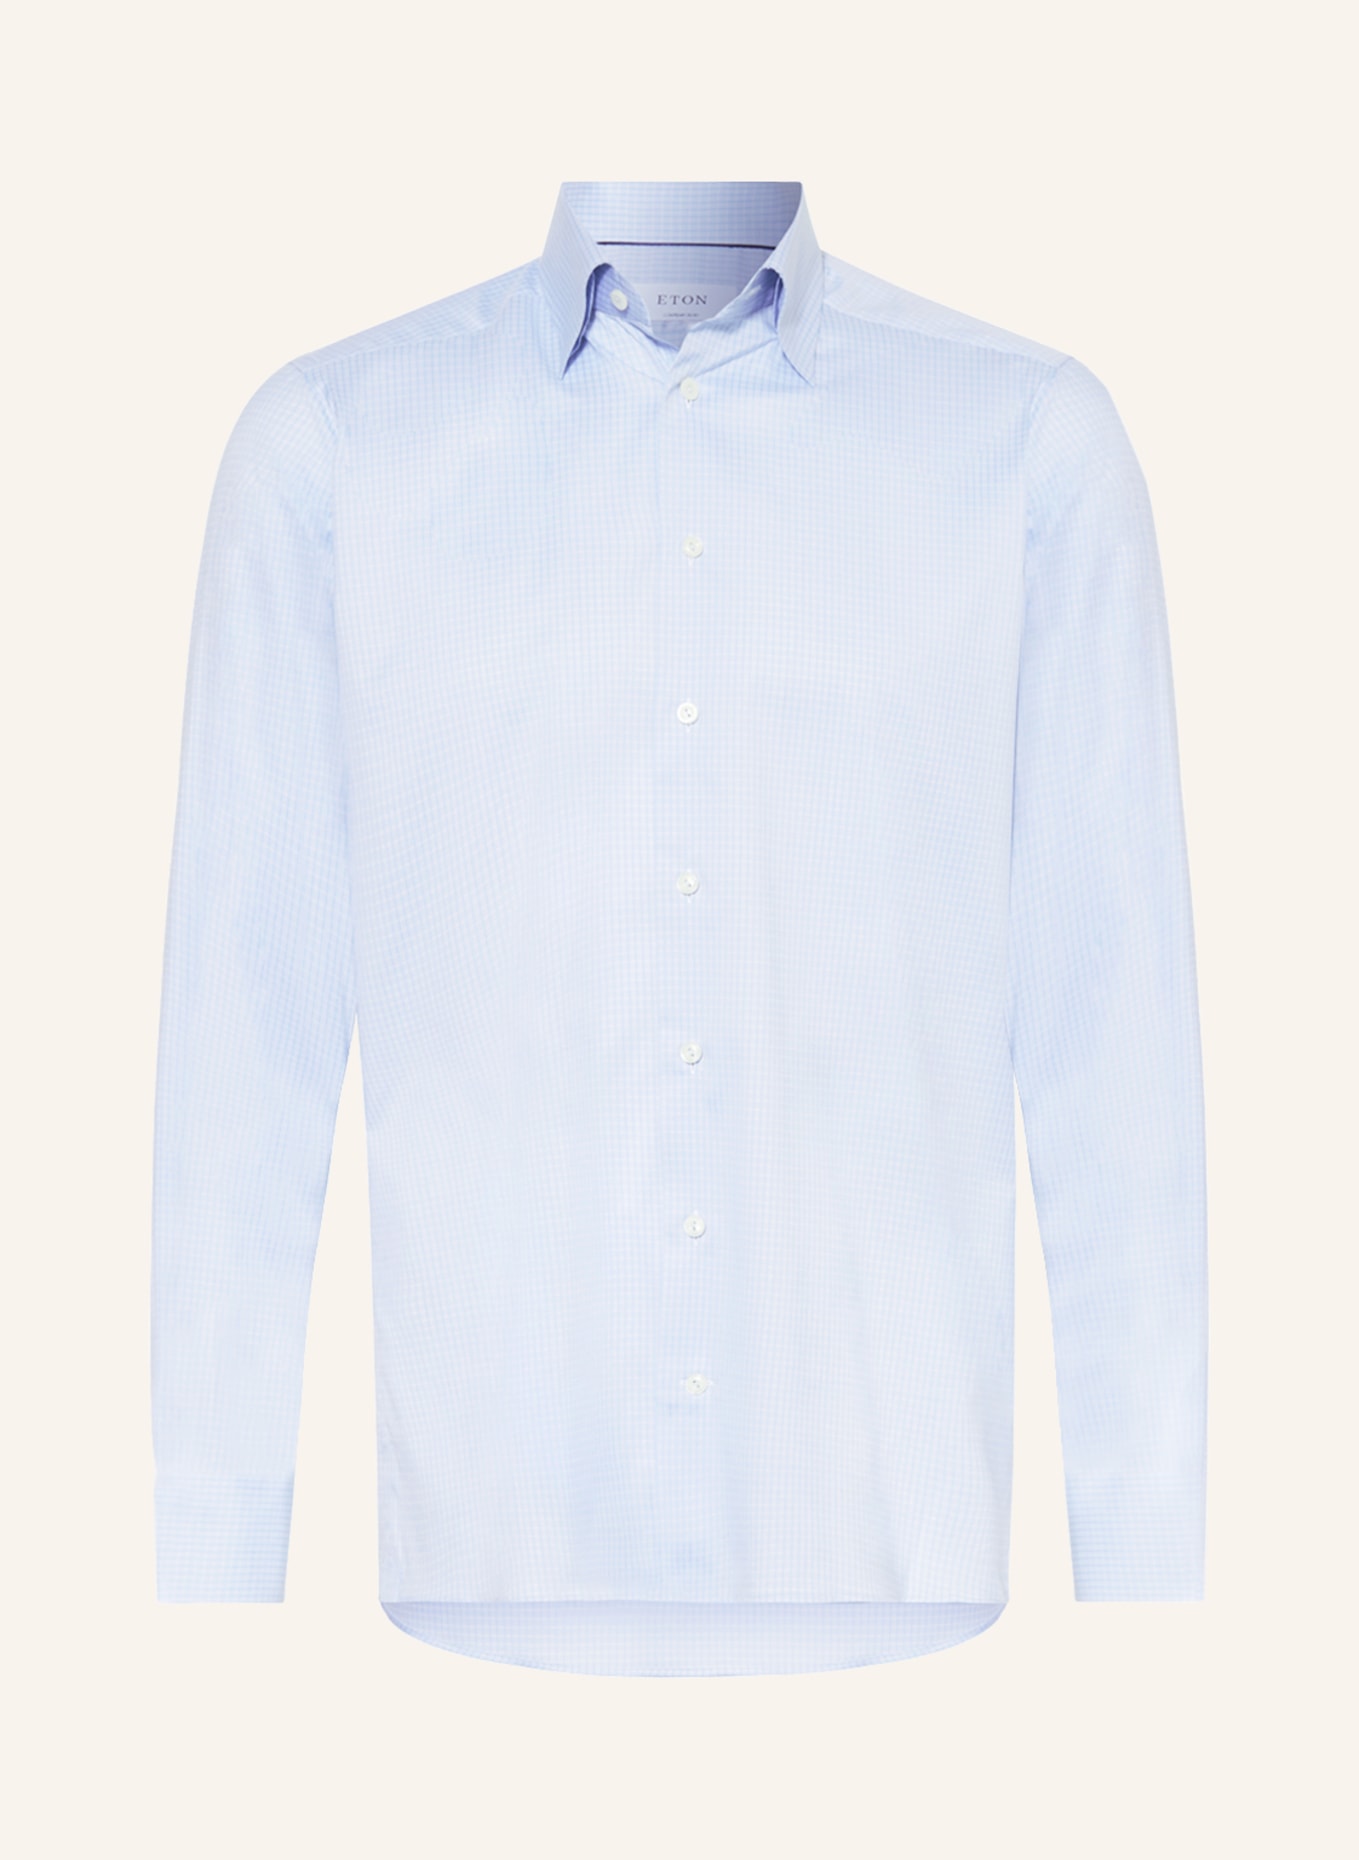 ETON Shirt contemporary fit, Color: LIGHT BLUE (Image 1)